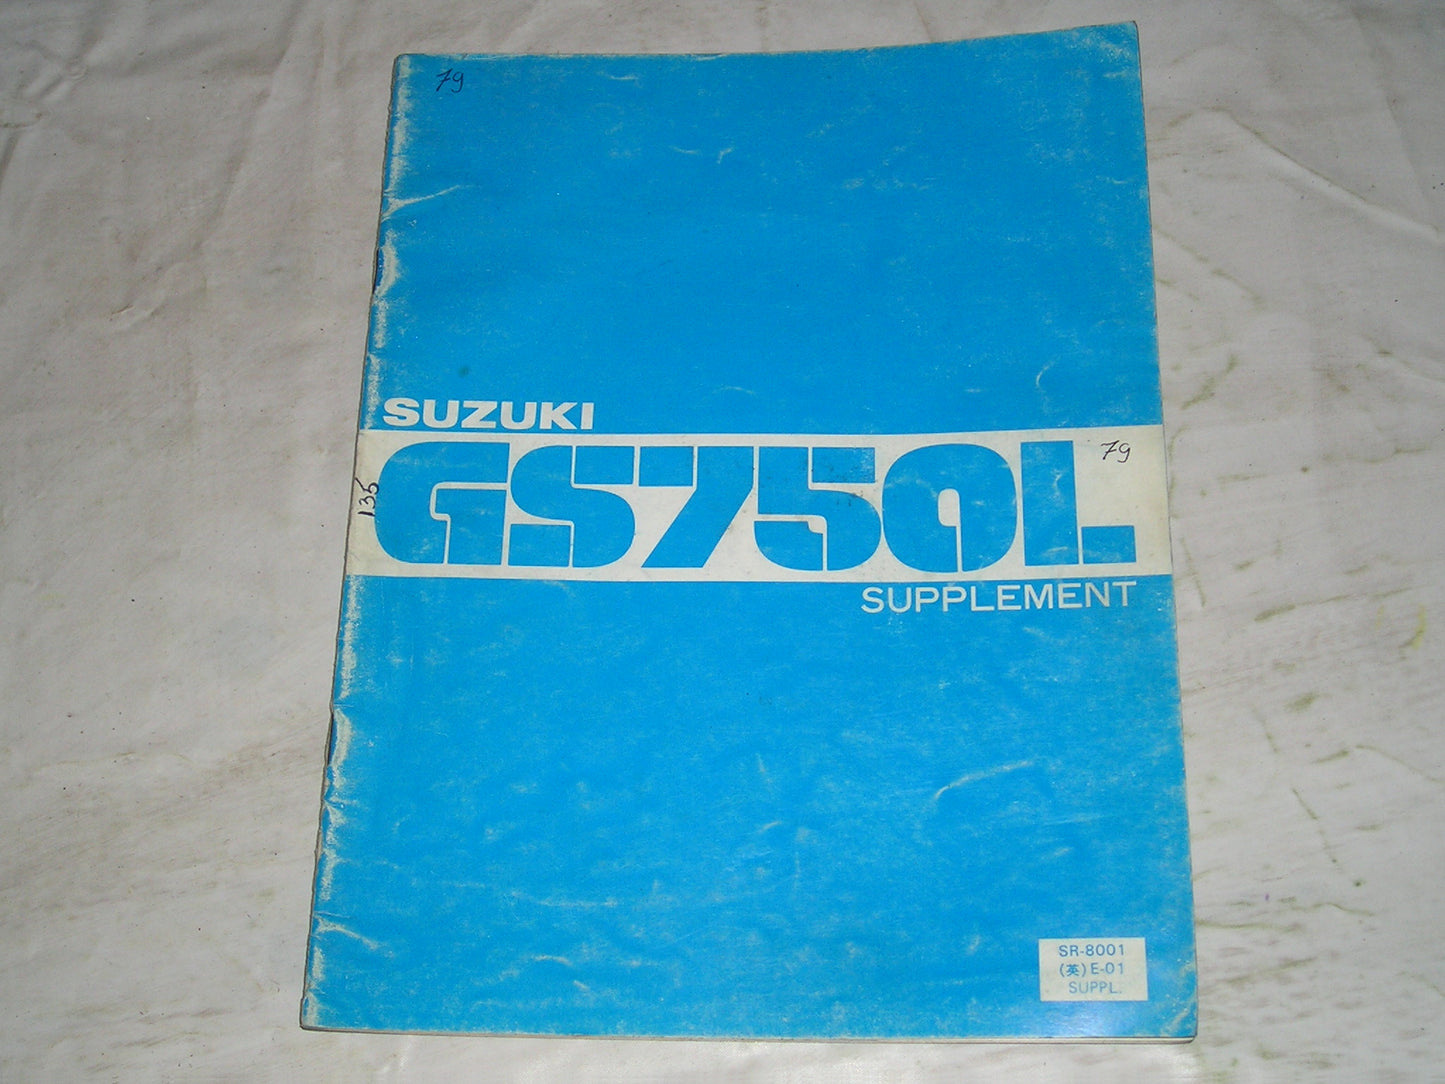 SUZUKI GS750 L 1980  Service Supplement Manual  SR-8001 E-01 SUPPL  #135